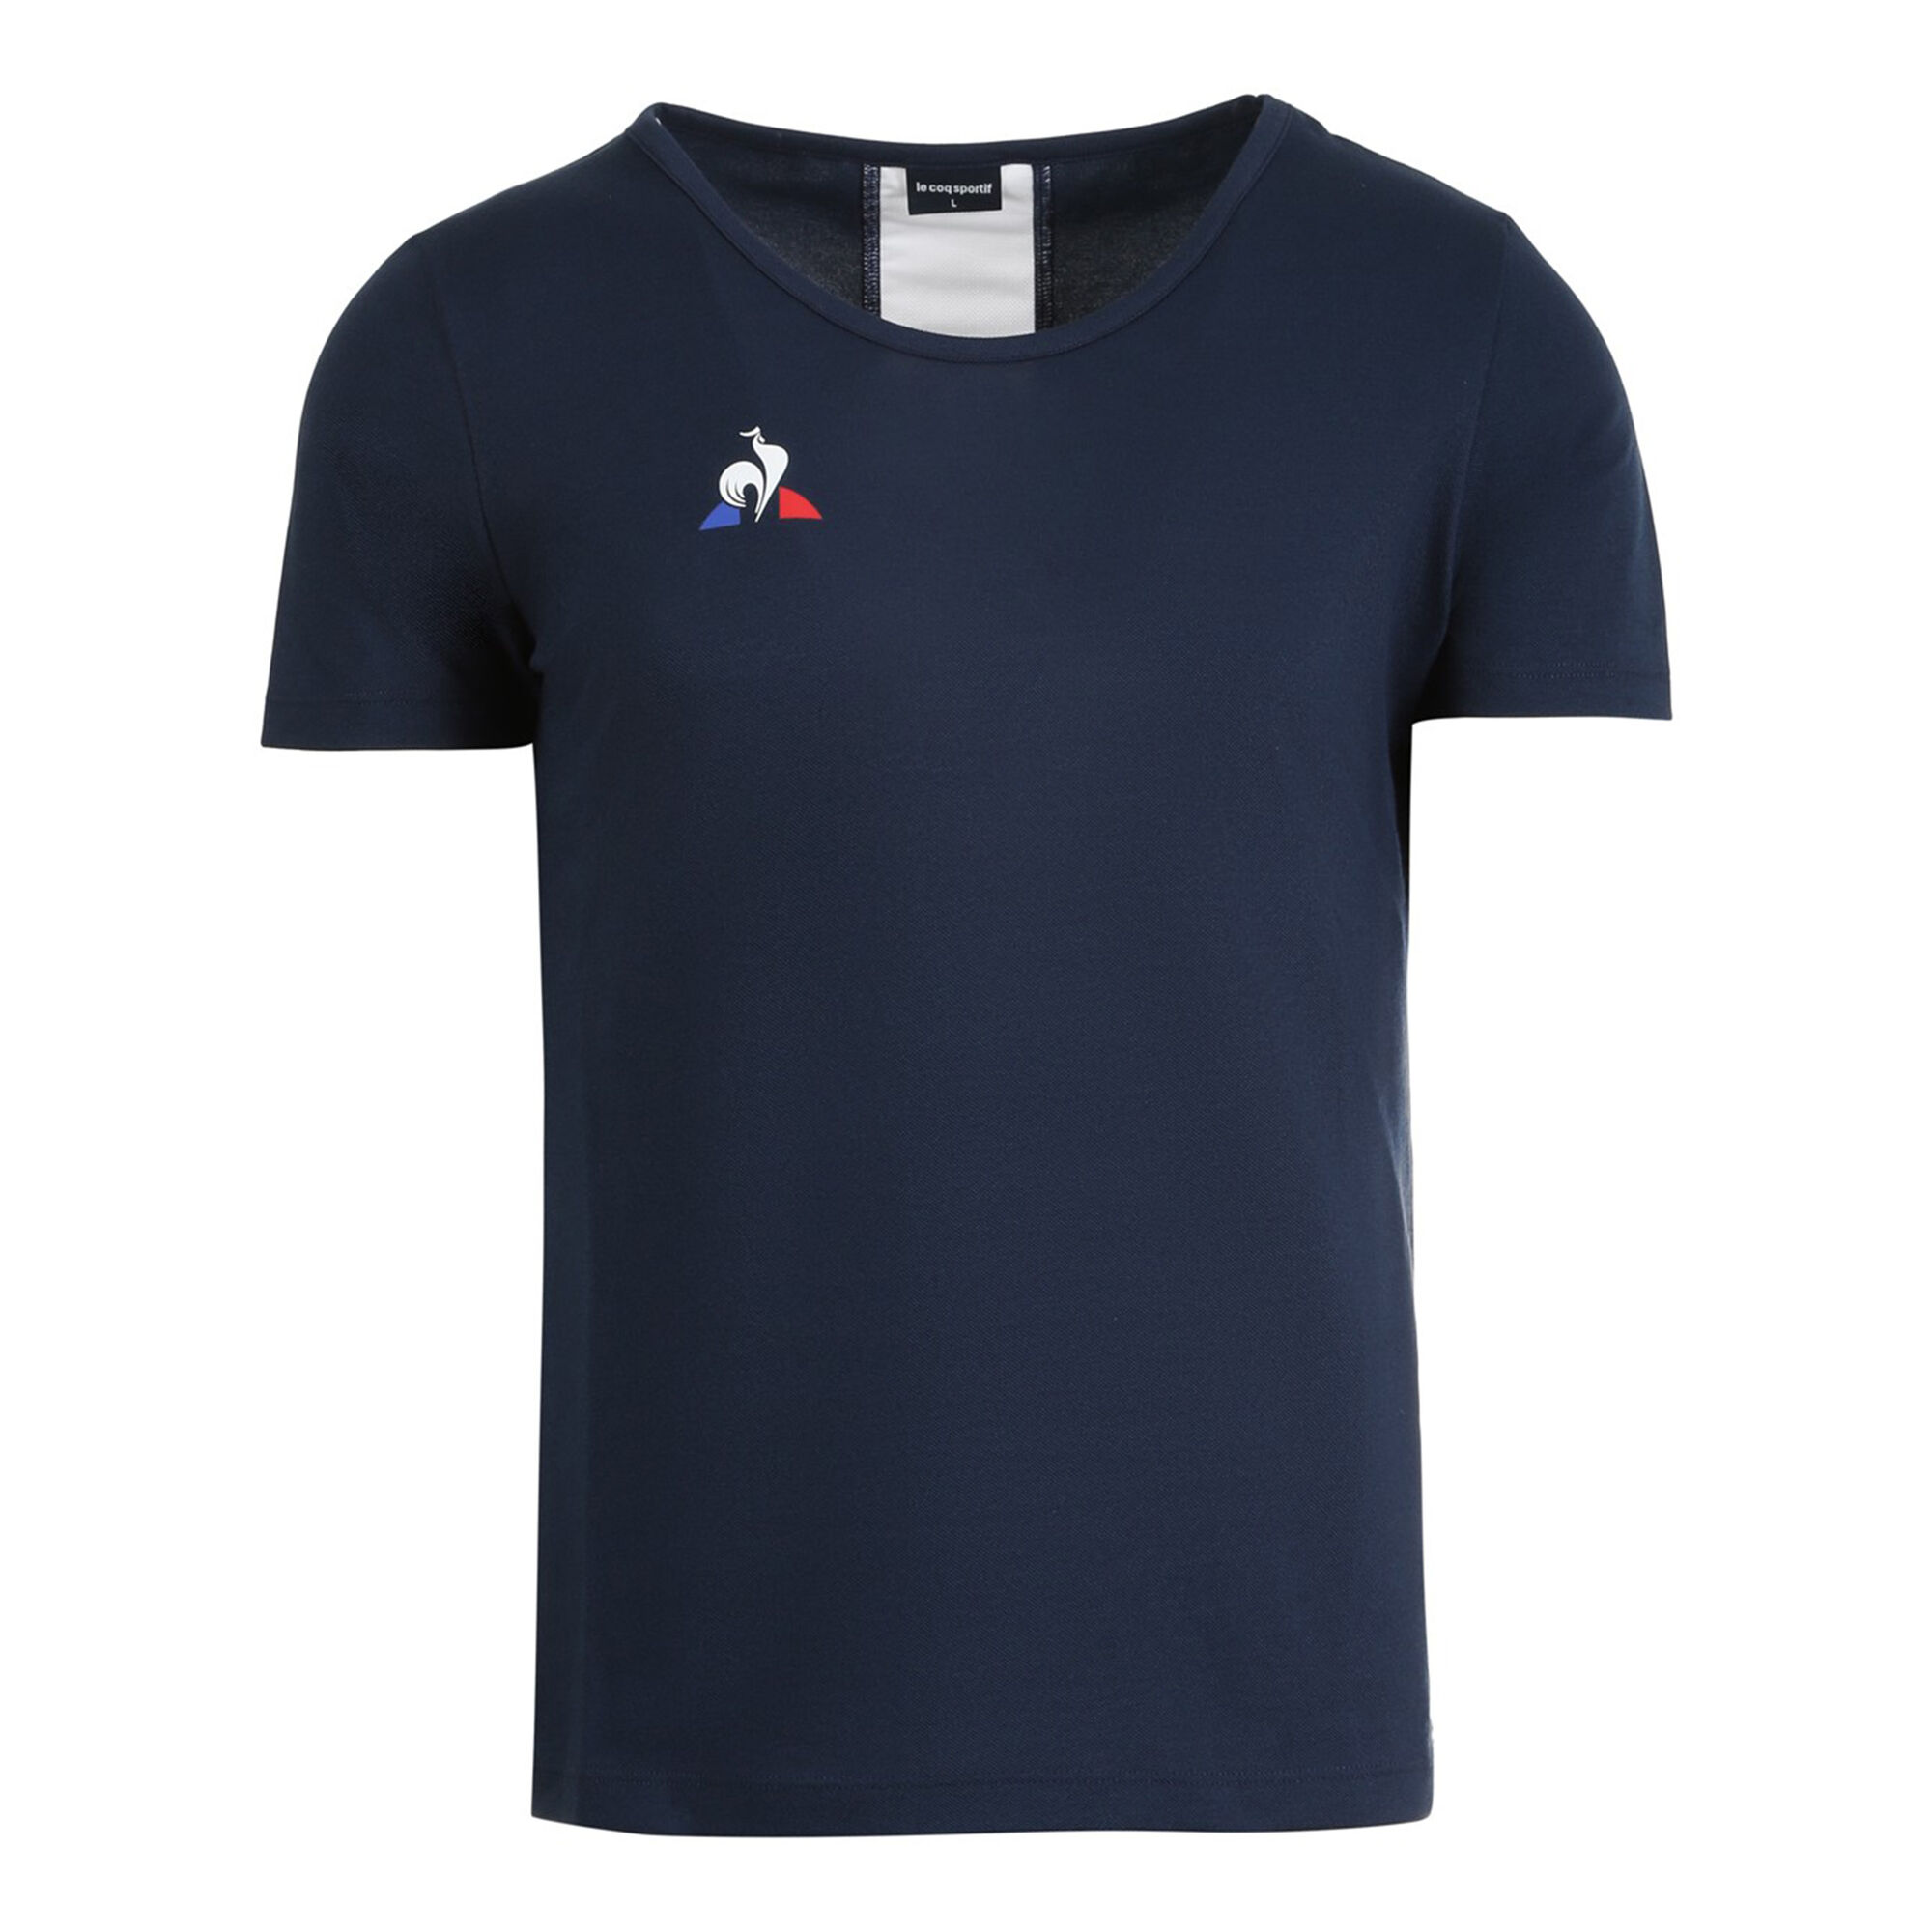 vredig gebed Terug, terug, terug deel Le Coq Sportif Match T-shirt Dames - Blauw online kopen | Tennis-Point